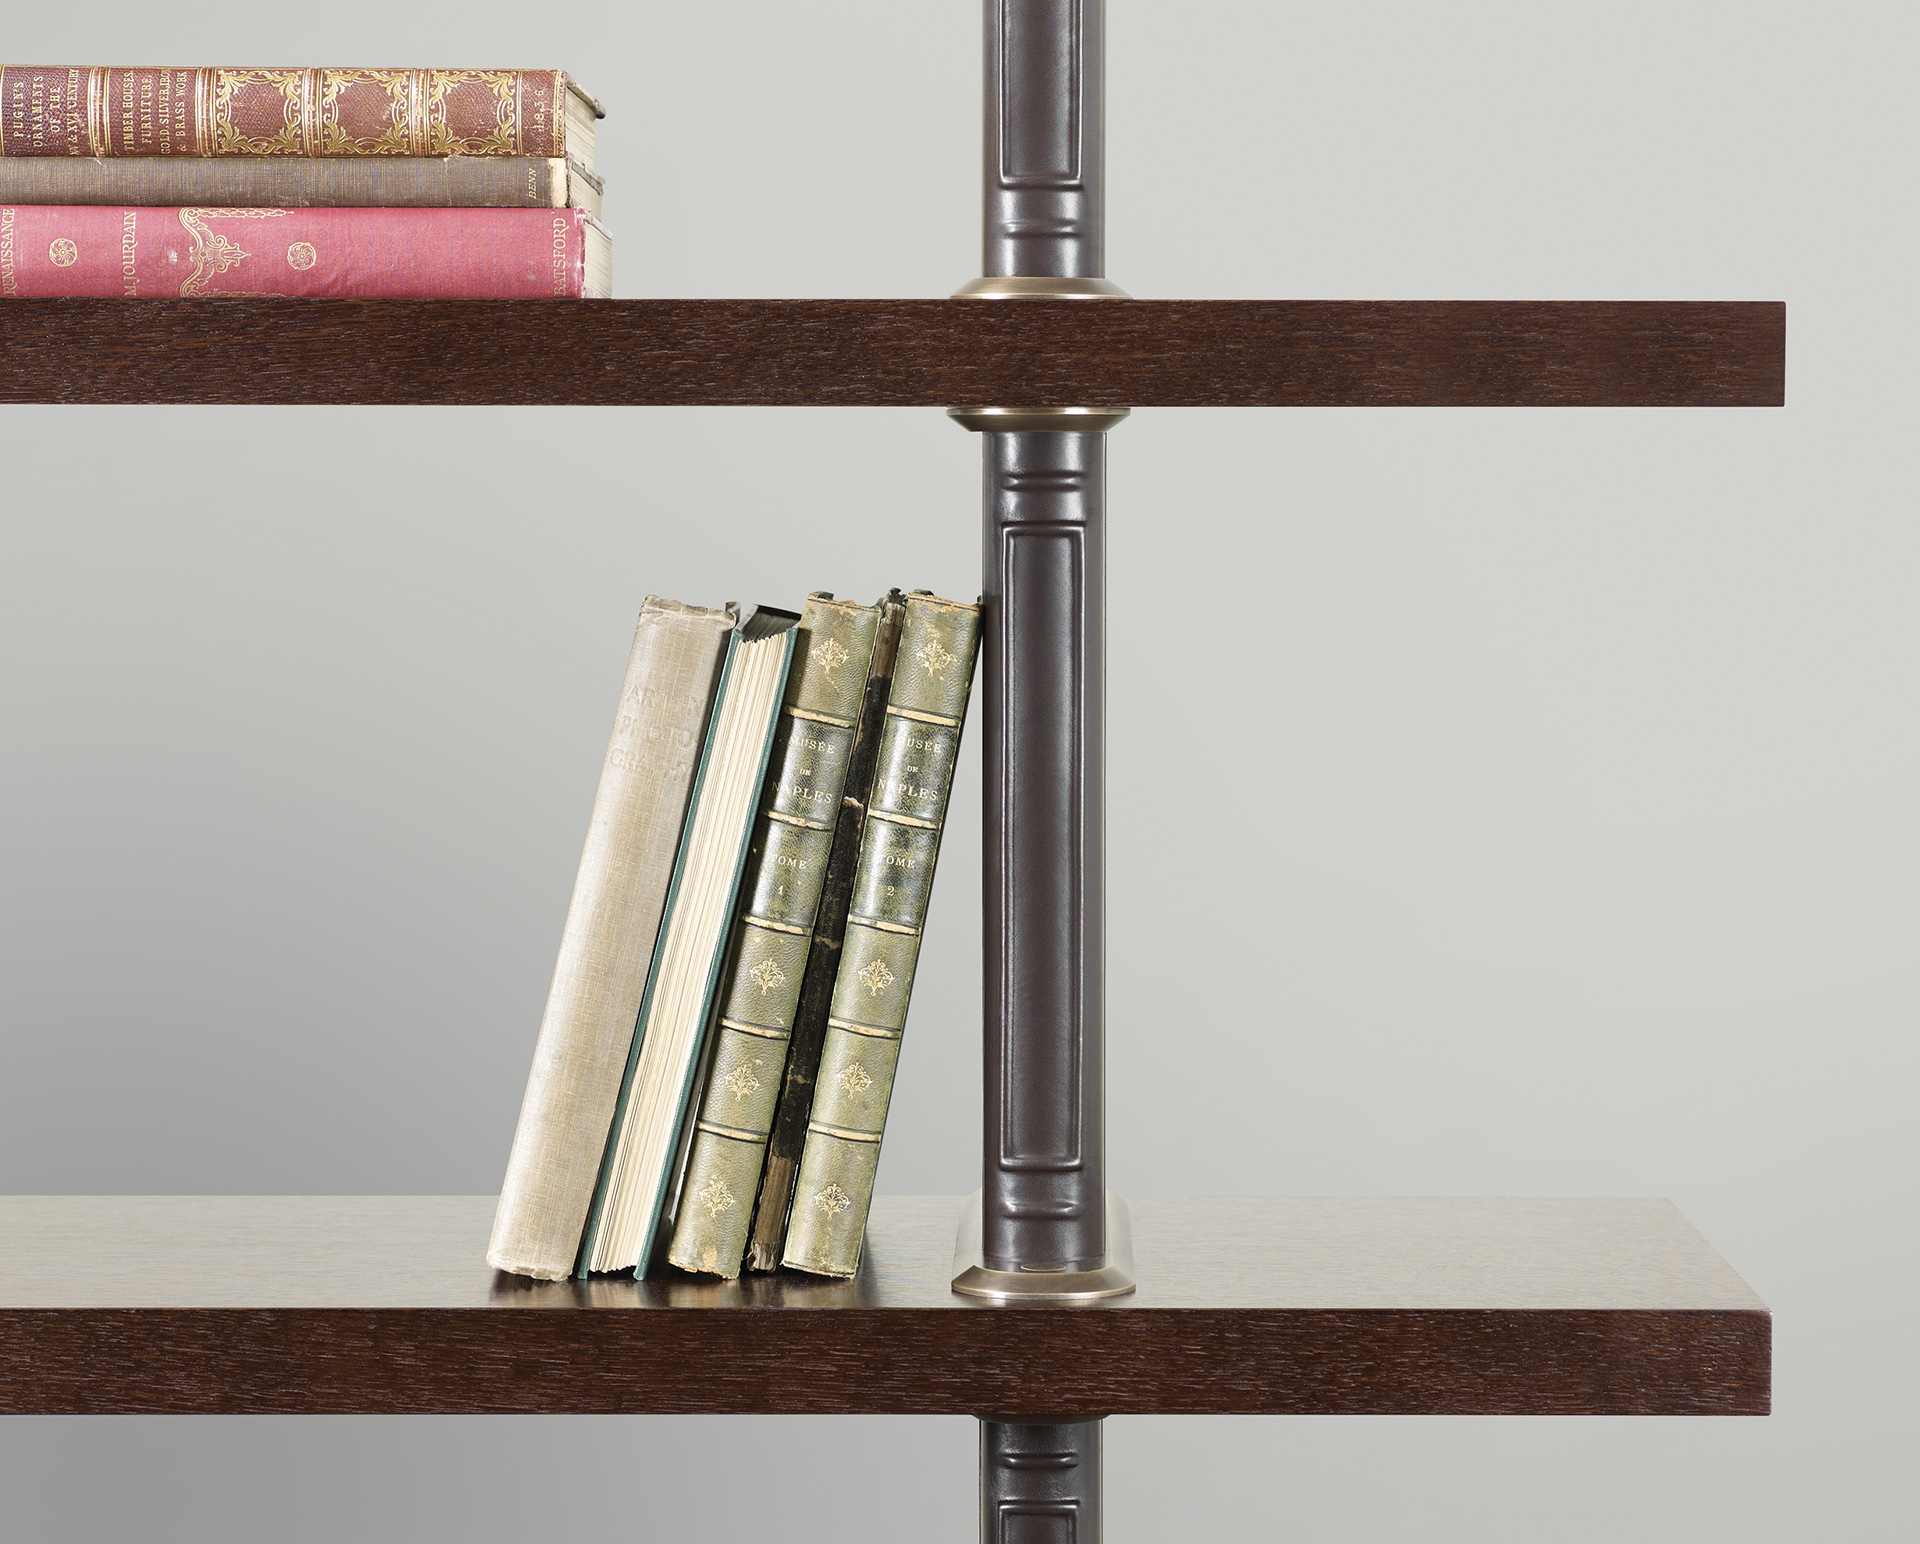 Dettaglio di Peggy, libreria modulare in legno con supporti rivestiti in pelle e dettagli in bronzo, del catalogo di Promemoria | Promemoria